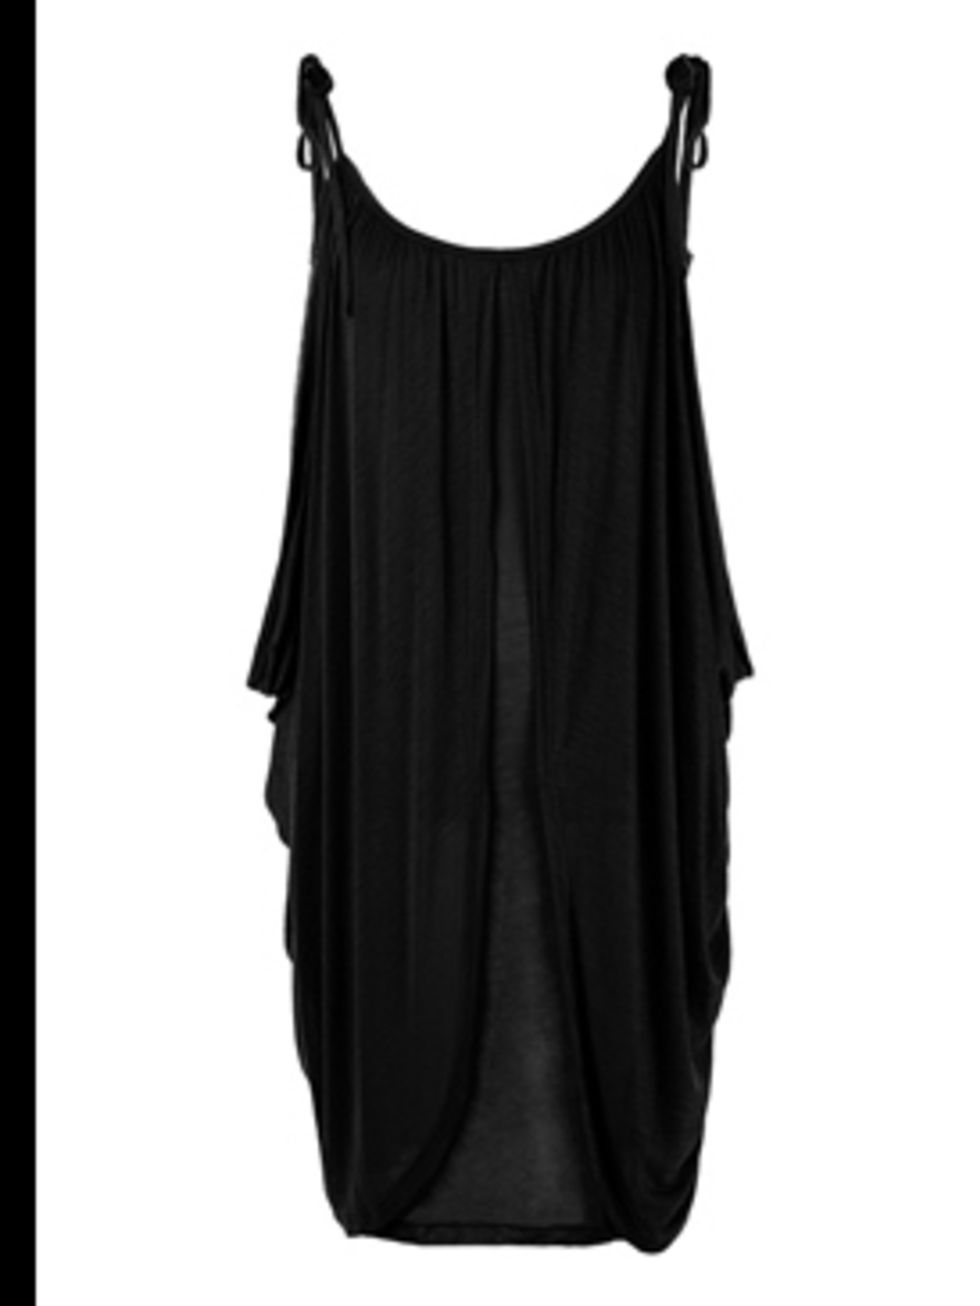 <p>Black Riviera Grecian style dress, £130, by Zoe Tees at <a href="http://www.my-wardrobe.com/zoe-tees/black-riviera-grecian-style-dress-by-zoe-tees">www.my-wardrobe.com</a></p>